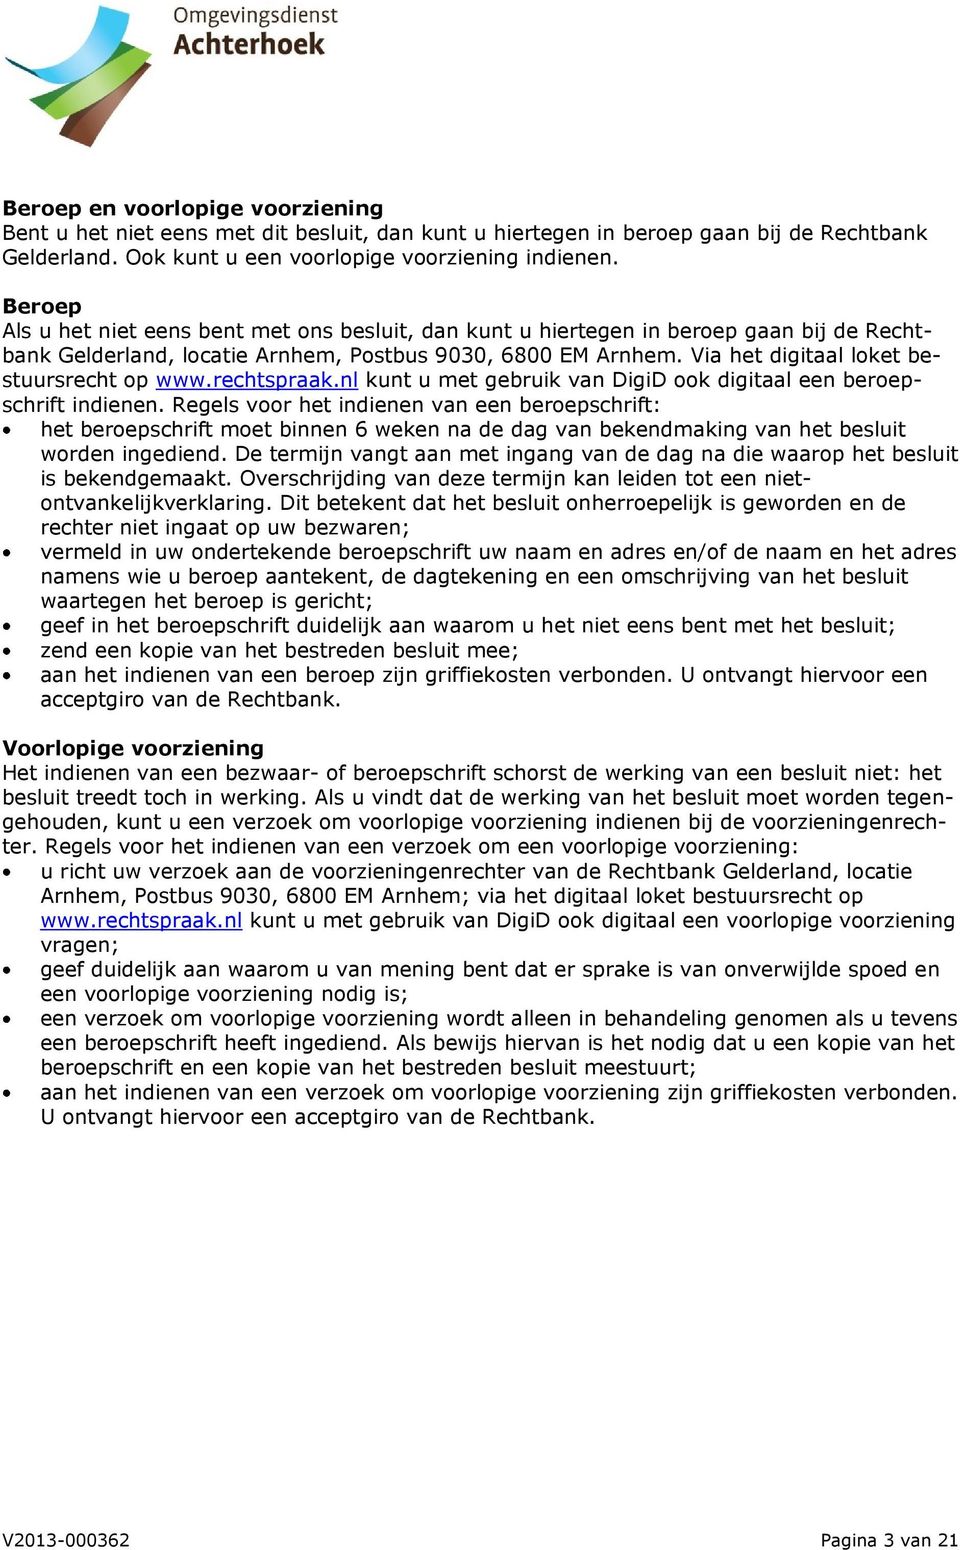 Via het digitaal loket bestuursrecht op www.rechtspraak.nl kunt u met gebruik van DigiD ook digitaal een beroepschrift indienen.